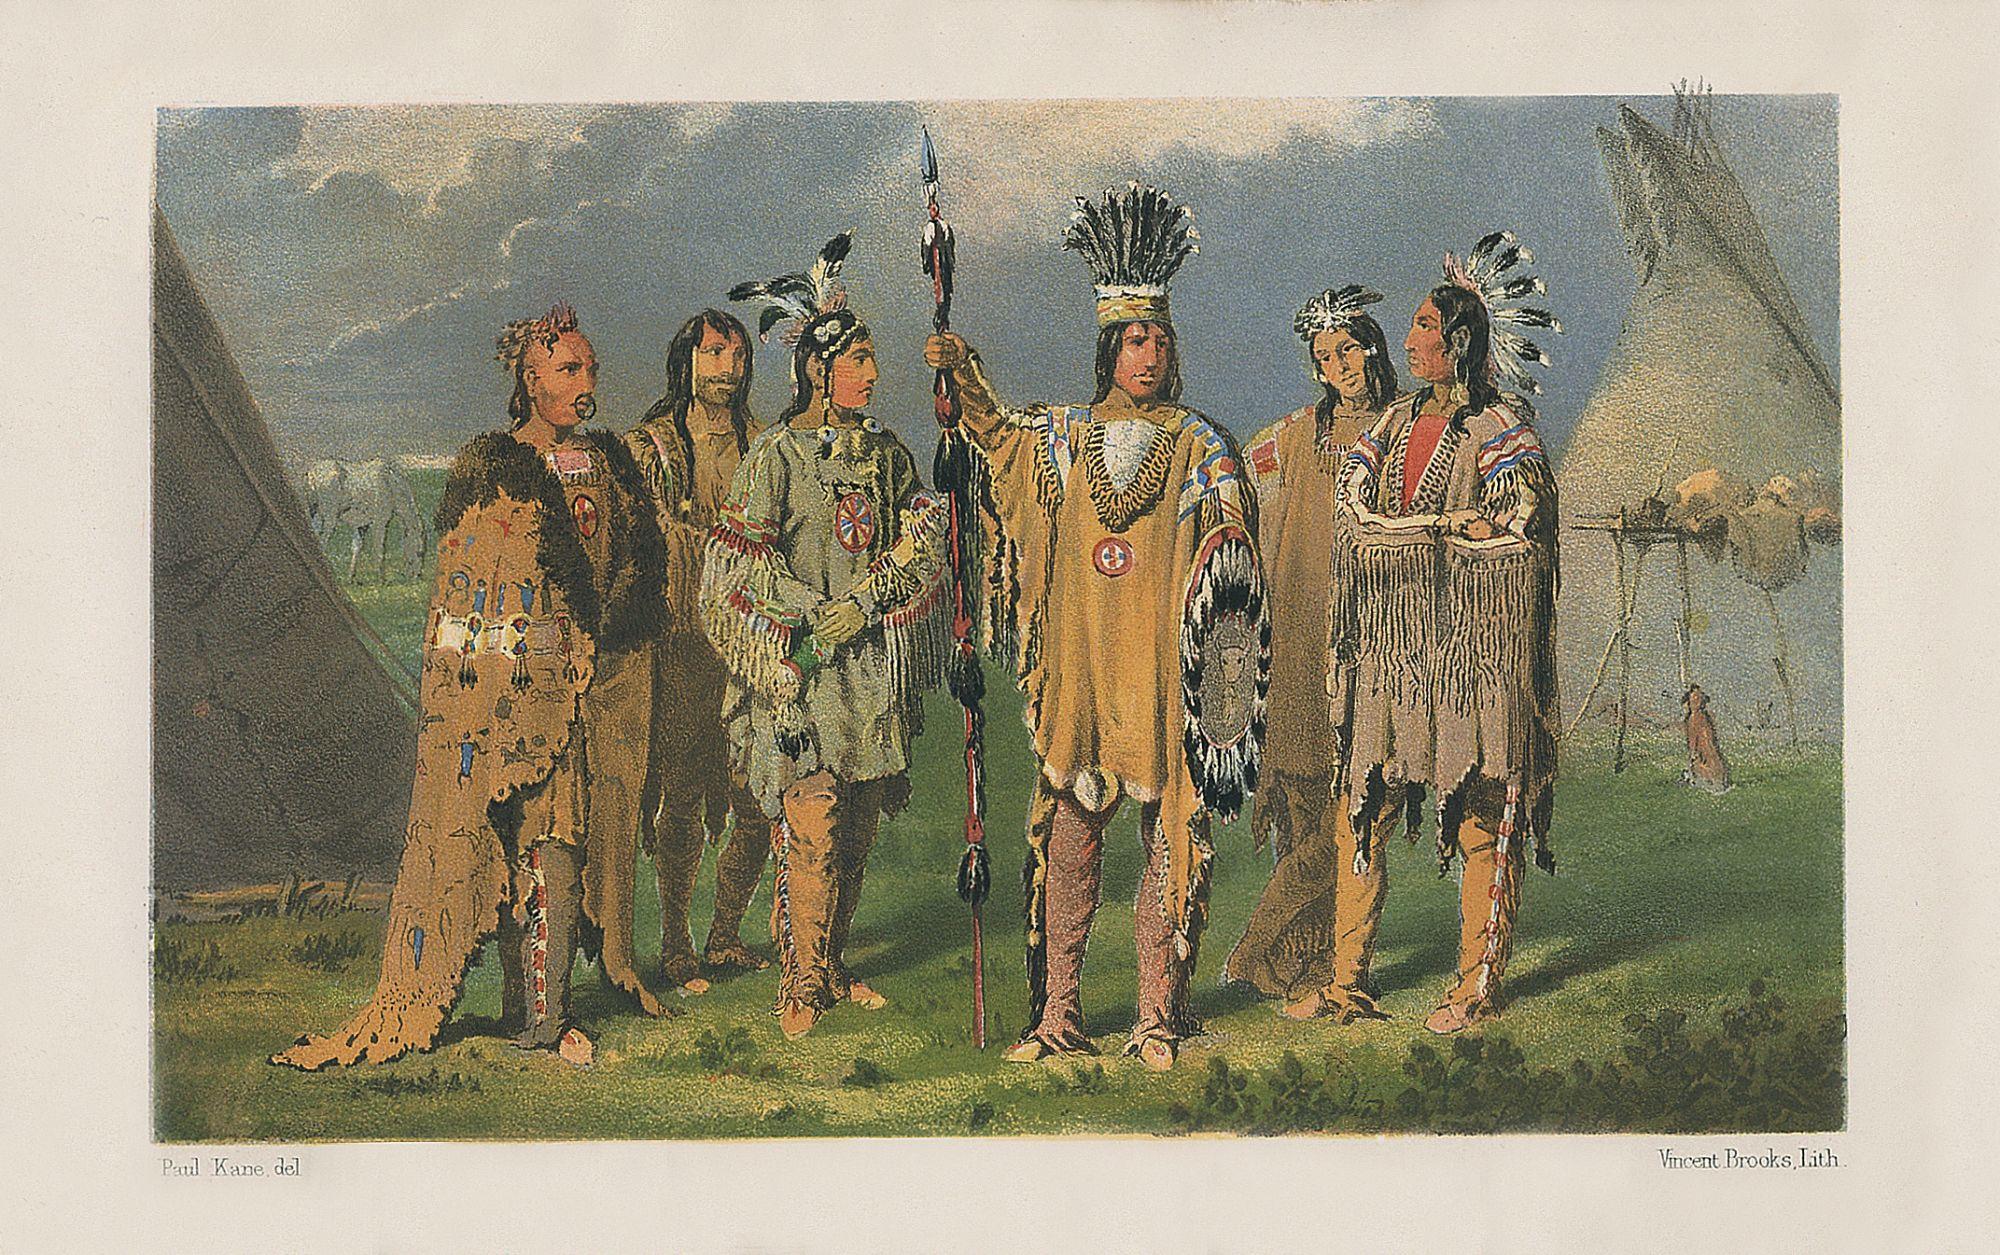 Kane, Paul (1810-1871)
Vagabondages d'un artiste parmi les Indiens d'Amérique du Nord ; du Canada à l'île de Vancouver et à l'Oregon en passant par le territoire de la Compagnie de la Baie d'Hudson, et retour. 
Londres : Longman, Brown, Green,